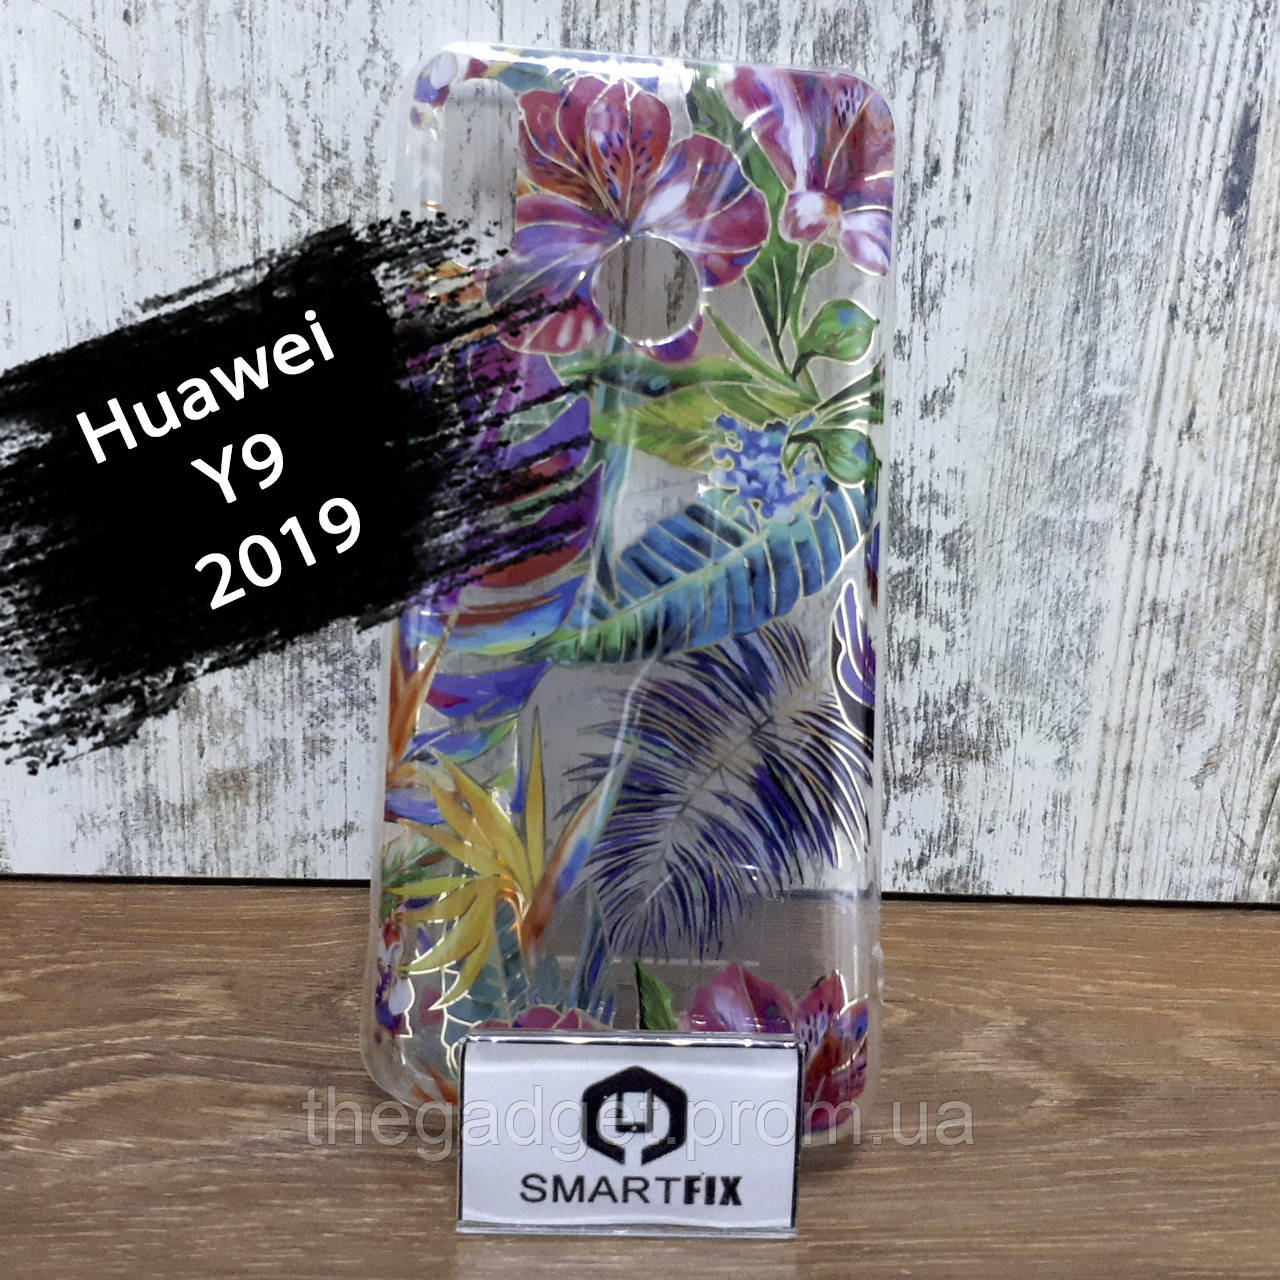 Чехол с рисунком для Huawei Y9 2019 Gelius